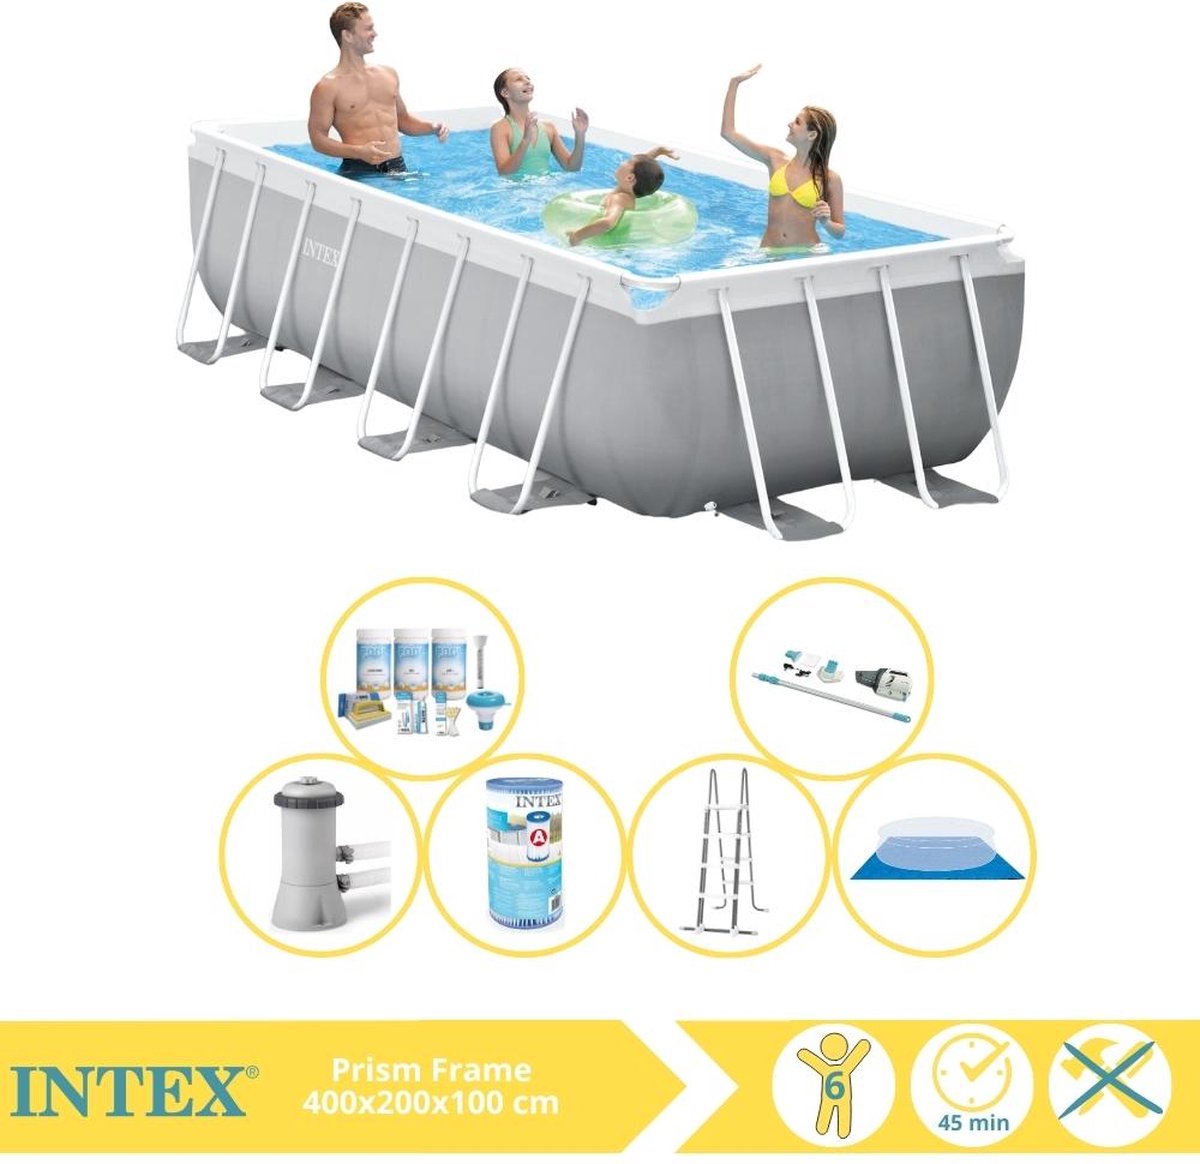 Intex Prism Frame Zwembad - Opzetzwembad - 400x200x100 cm - Inclusief Onderhoudspakket, Filter, Grondzeil en Stofzuiger